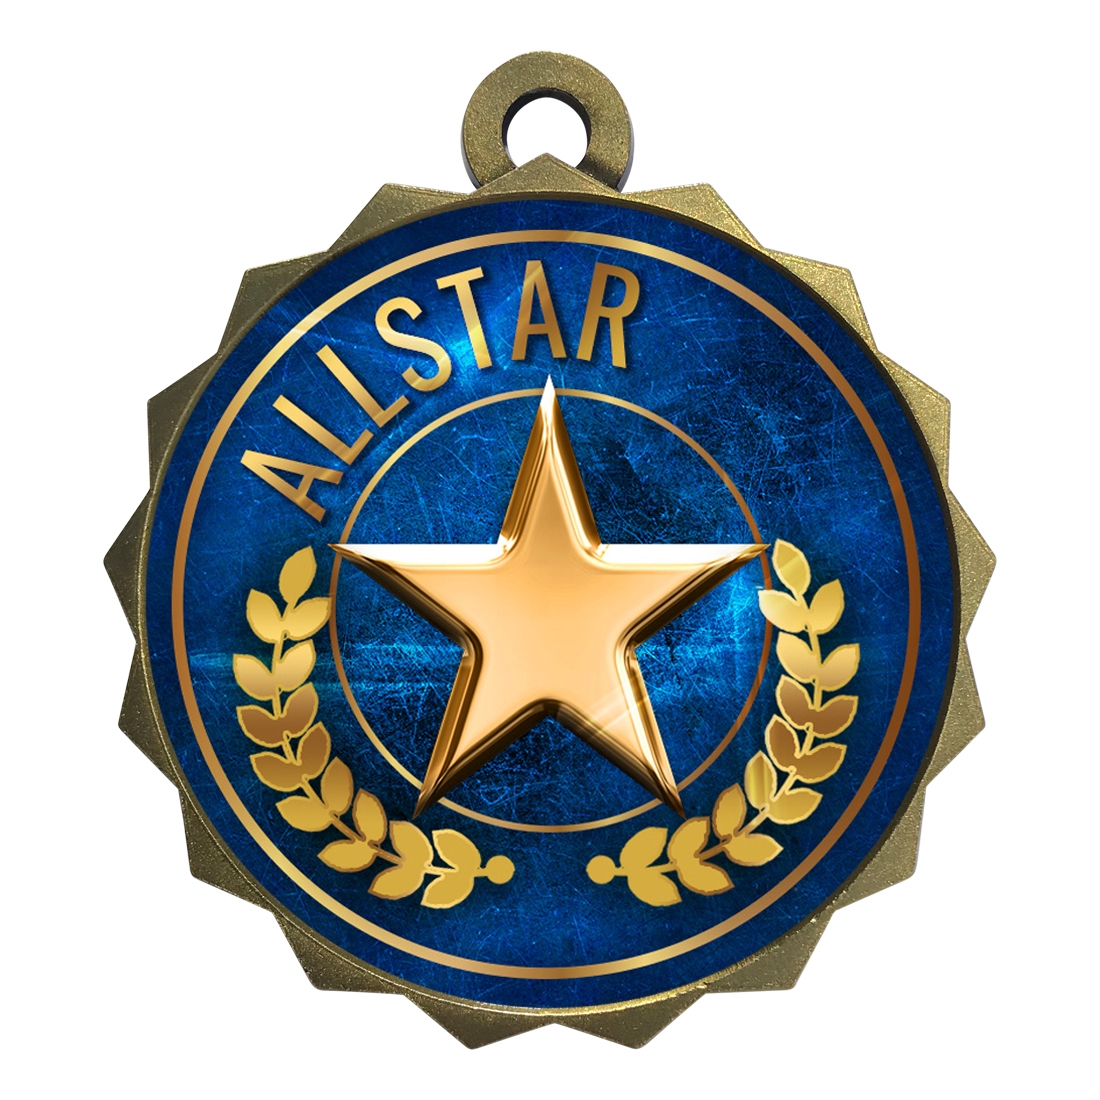 2-1/4" Allstar Medal